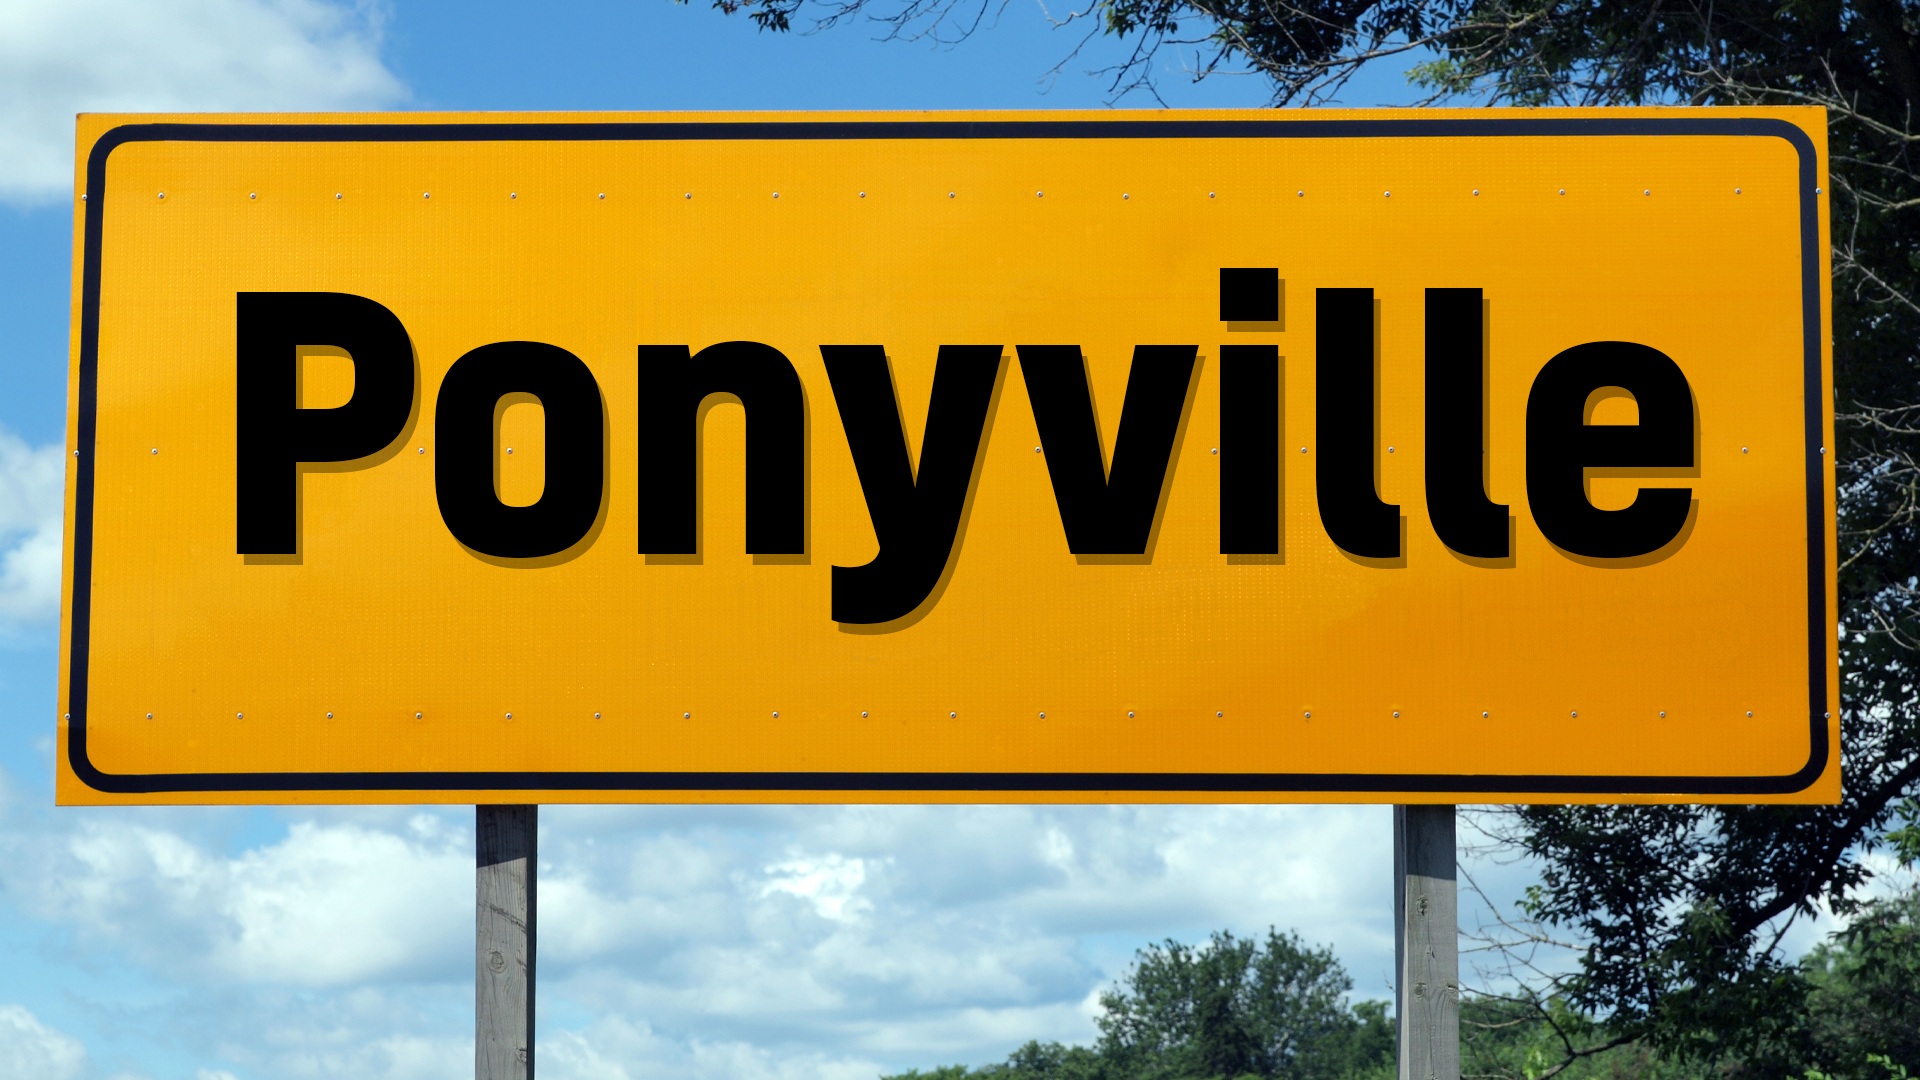 Ponyville